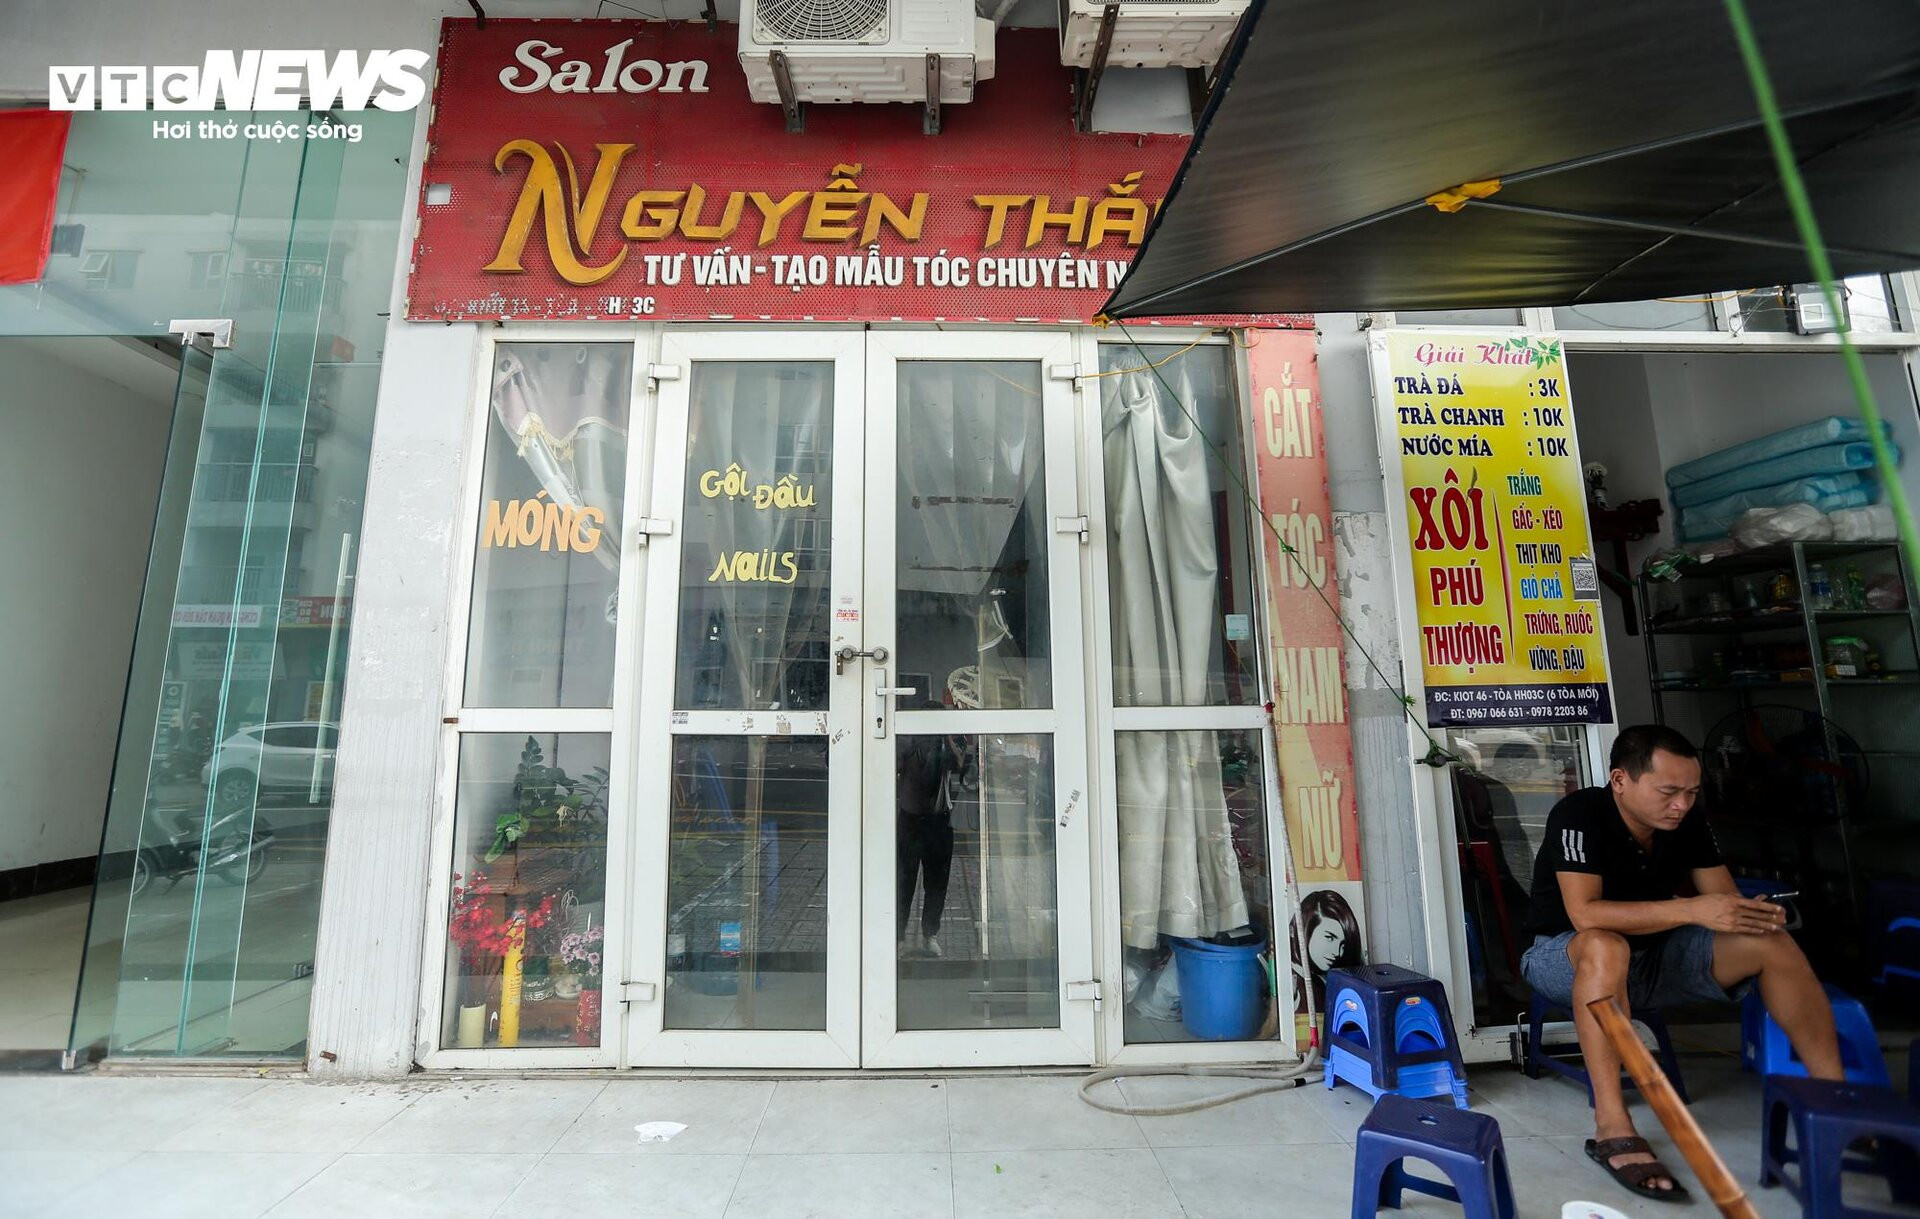 KĐT Thanh Hà khát nước sạch: Hàng quán tạm nghỉ bán, mua nước đóng bình cầm cự - 6